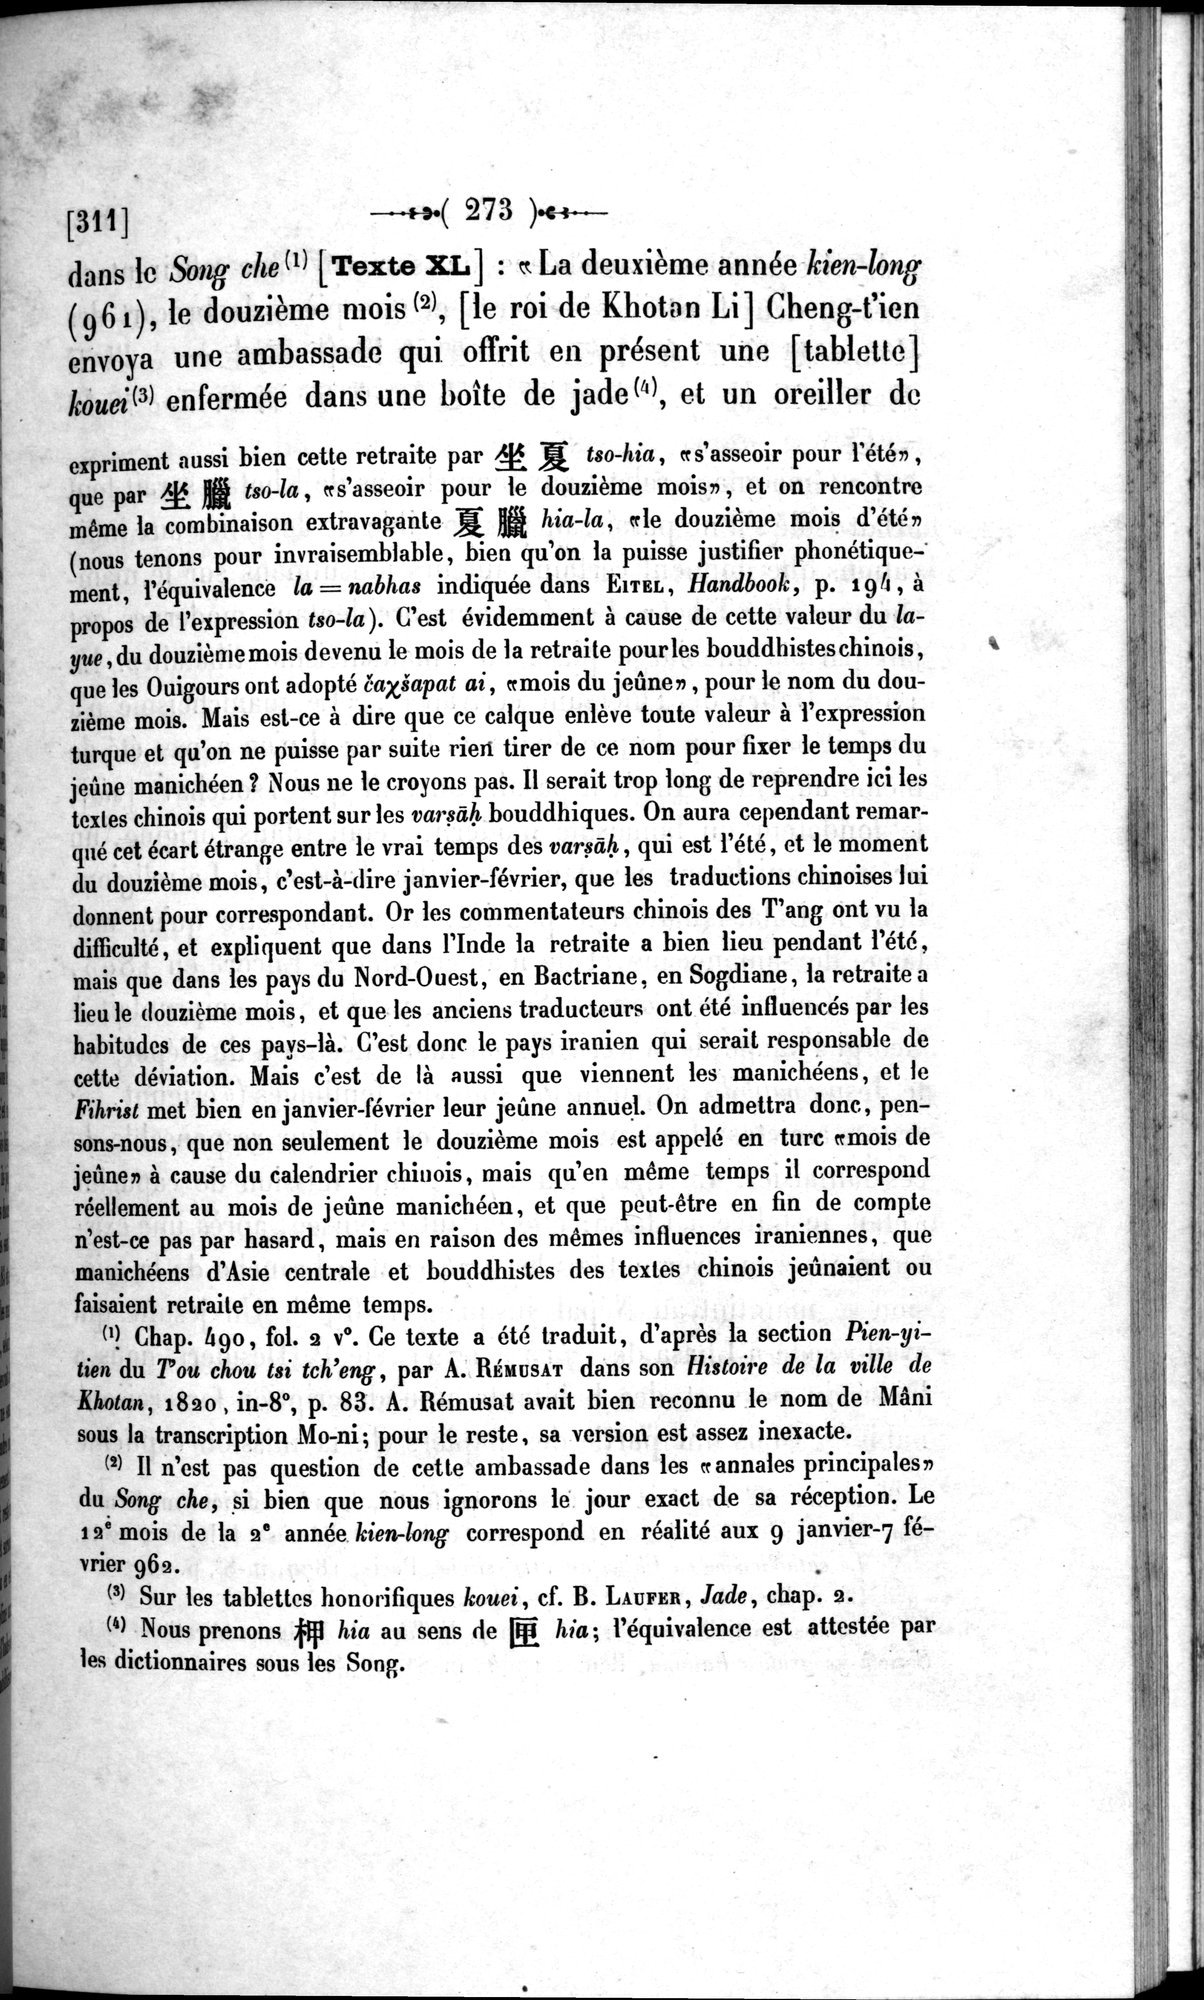 Un traité manichéen retrouvé en Chine : vol.1 / Page 283 (Grayscale High Resolution Image)